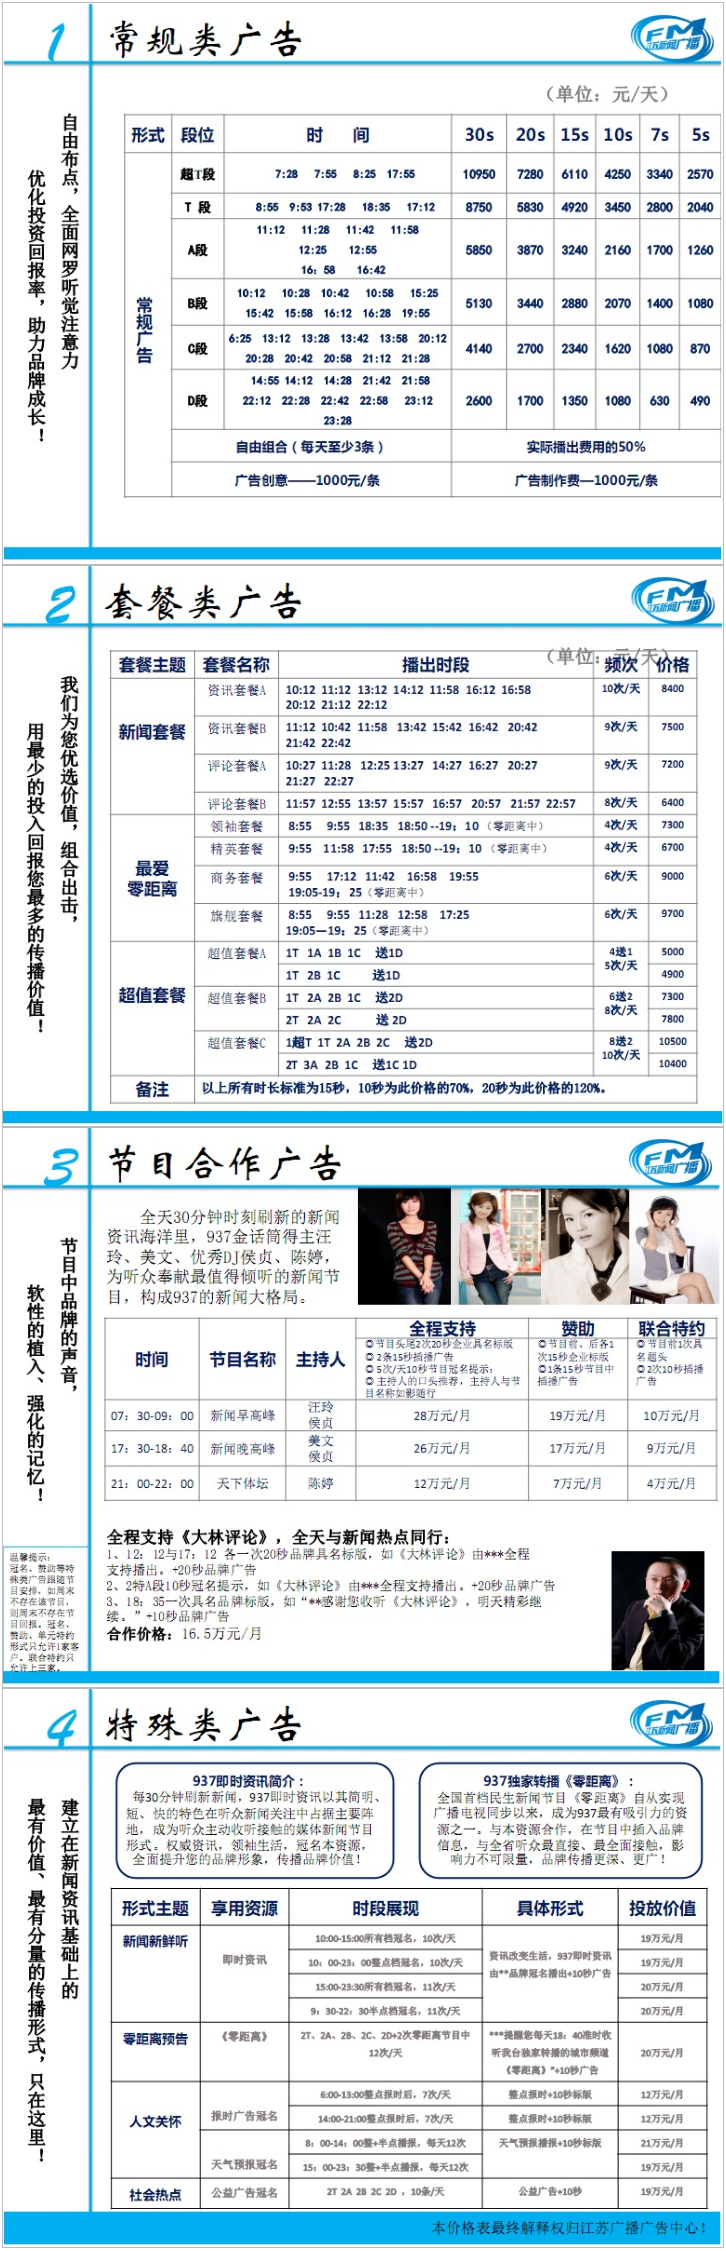 2011江苏人民广播电台新闻广播FM93.7广告报价表.png